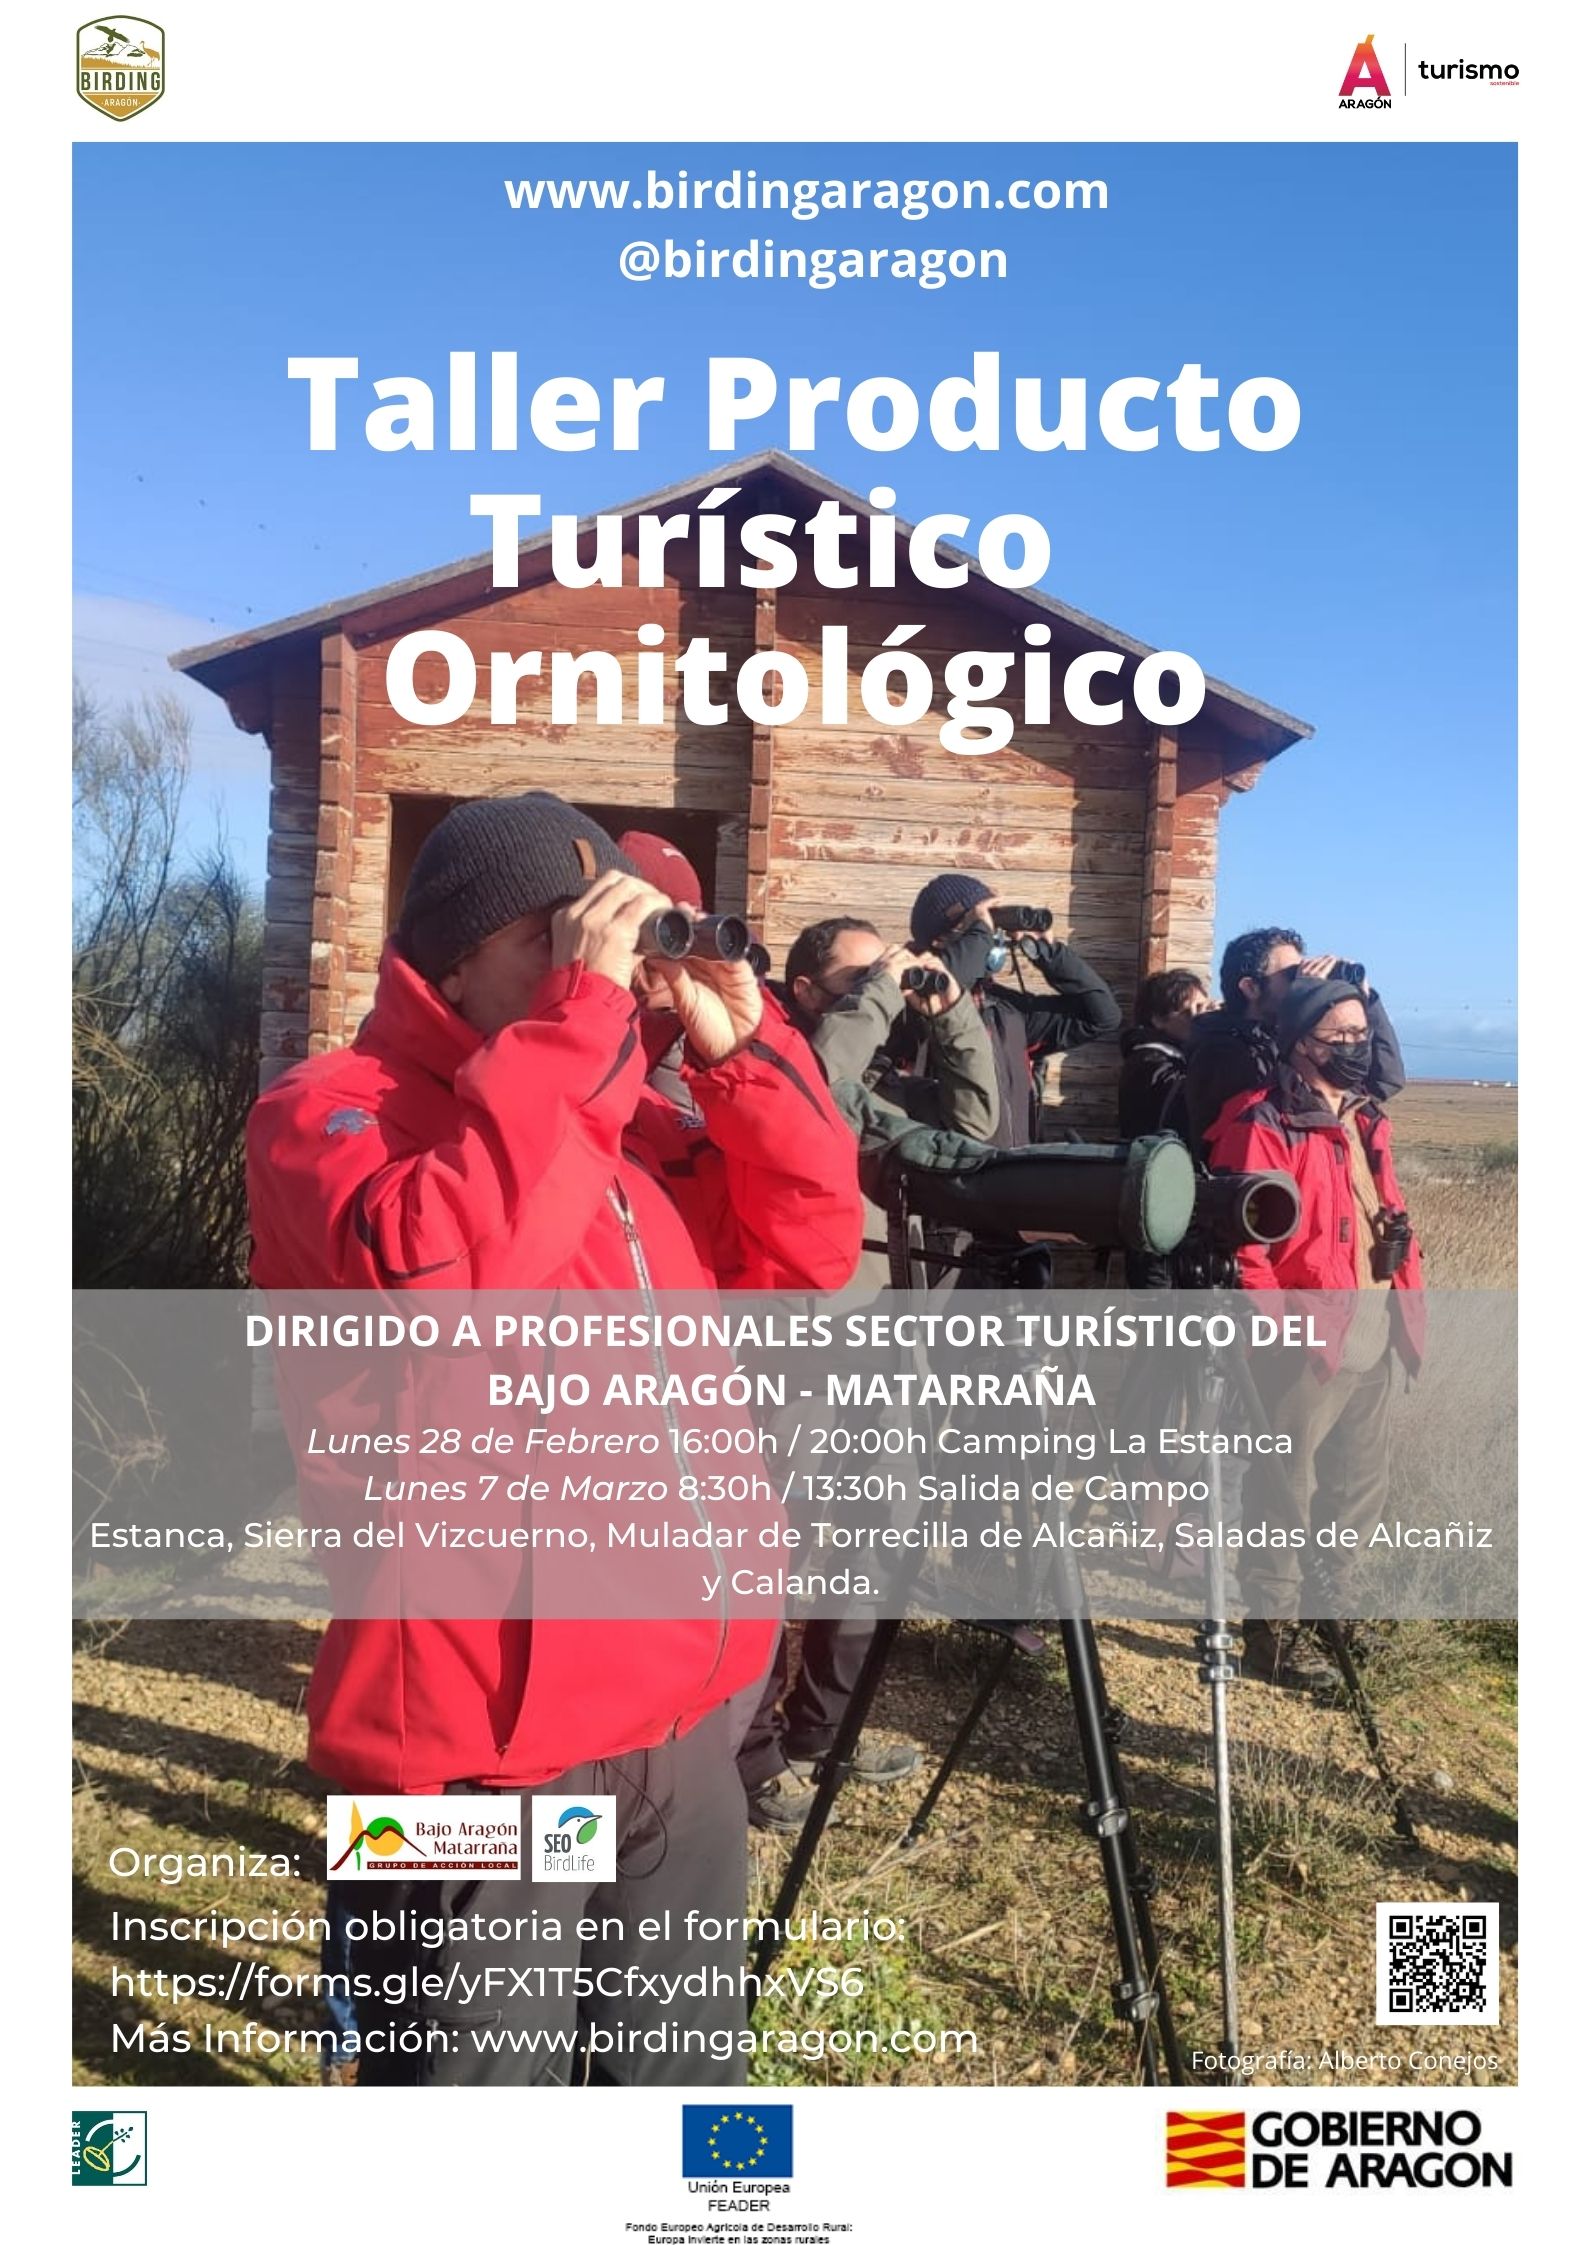 Taller de producto turístico ornitológico en las comarcas de Bajo Aragón y Matarraña